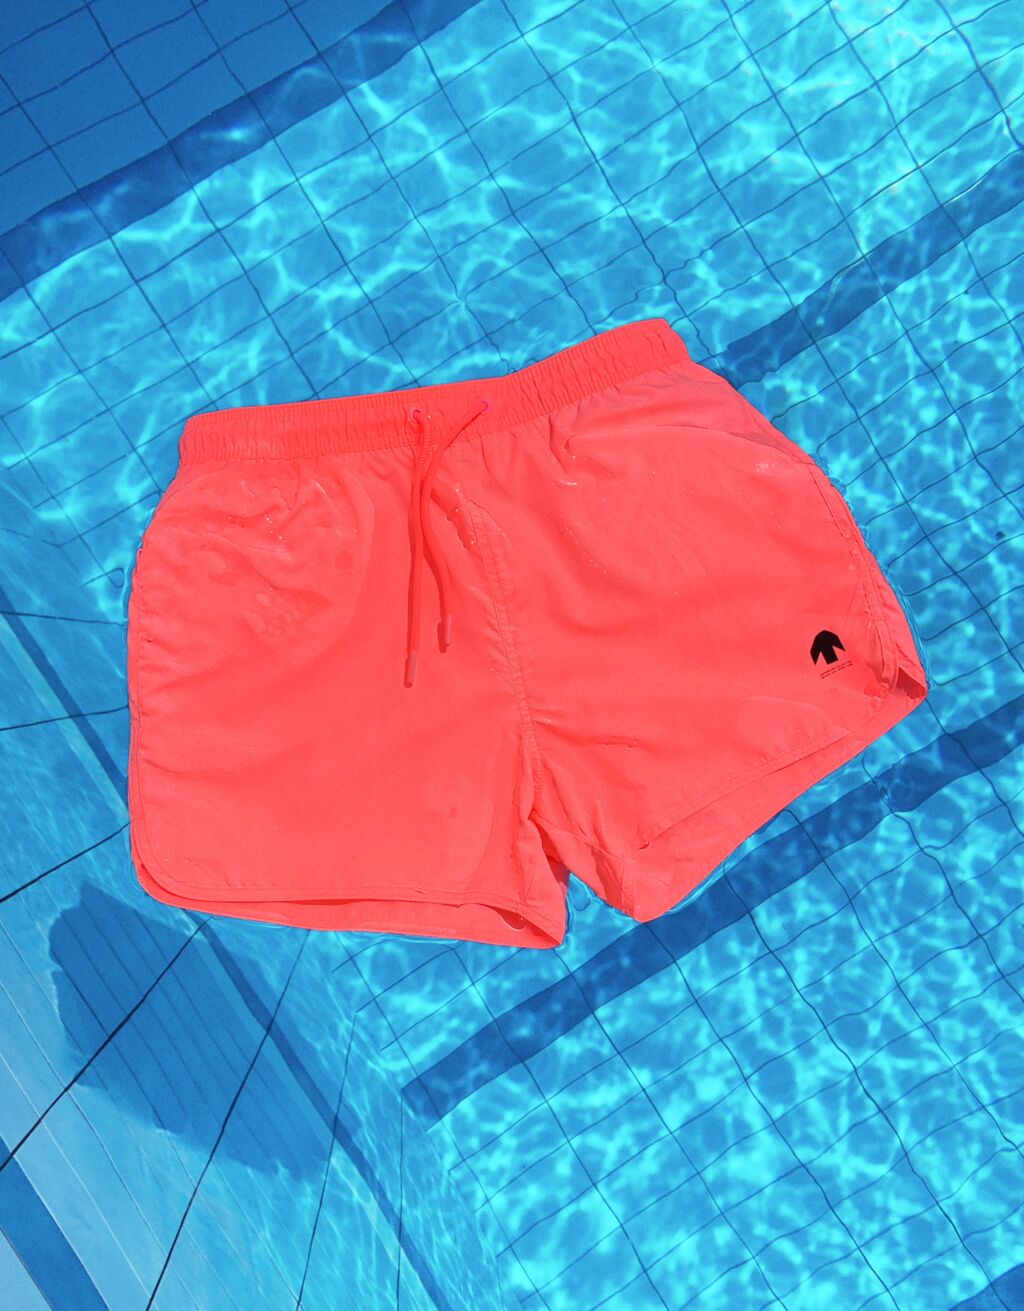 Basic plain swimming trunks